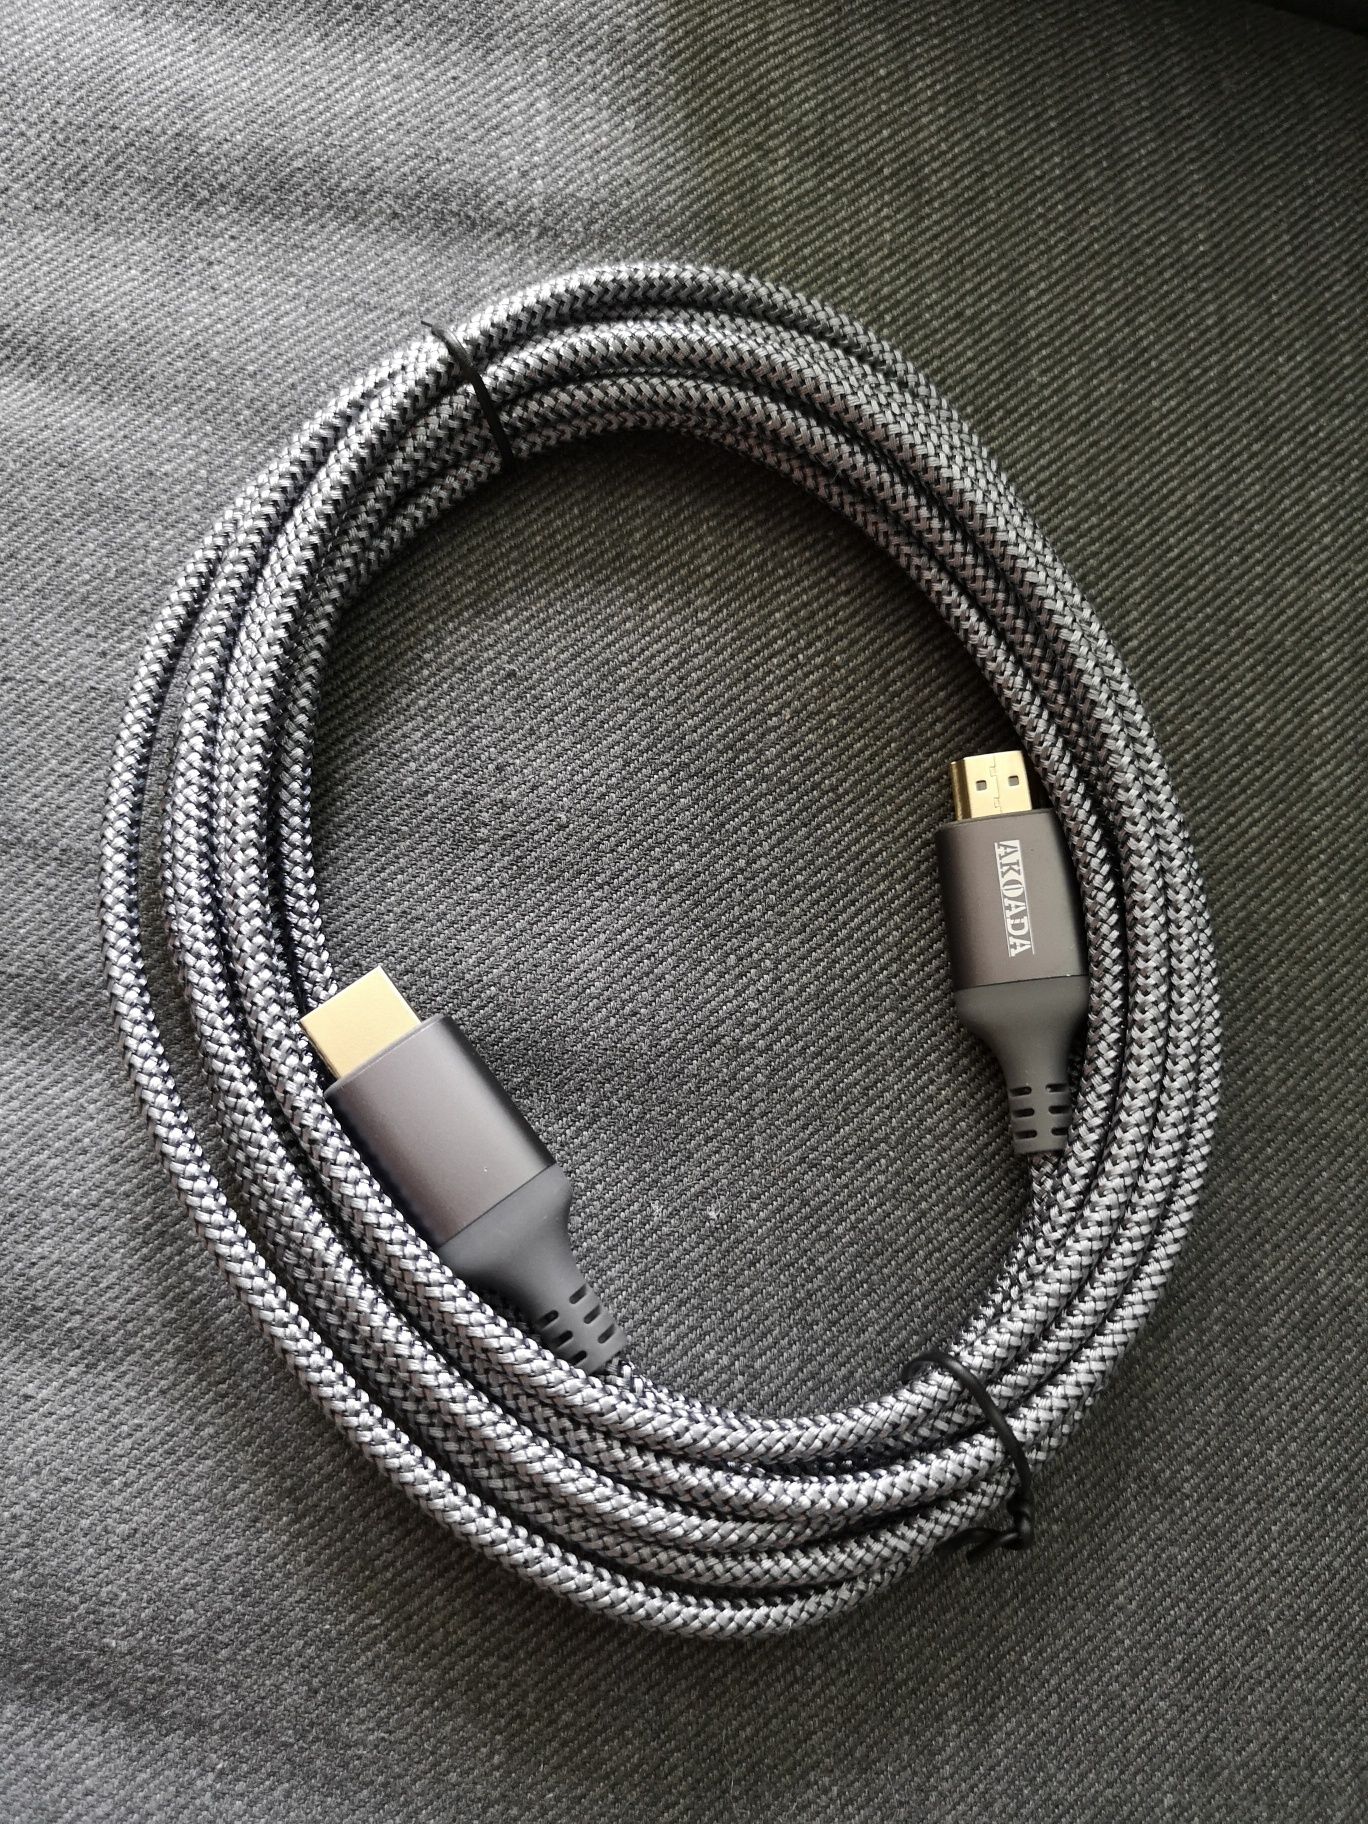 Cablu Hdmi 4K 4.5 metri calitate f buna